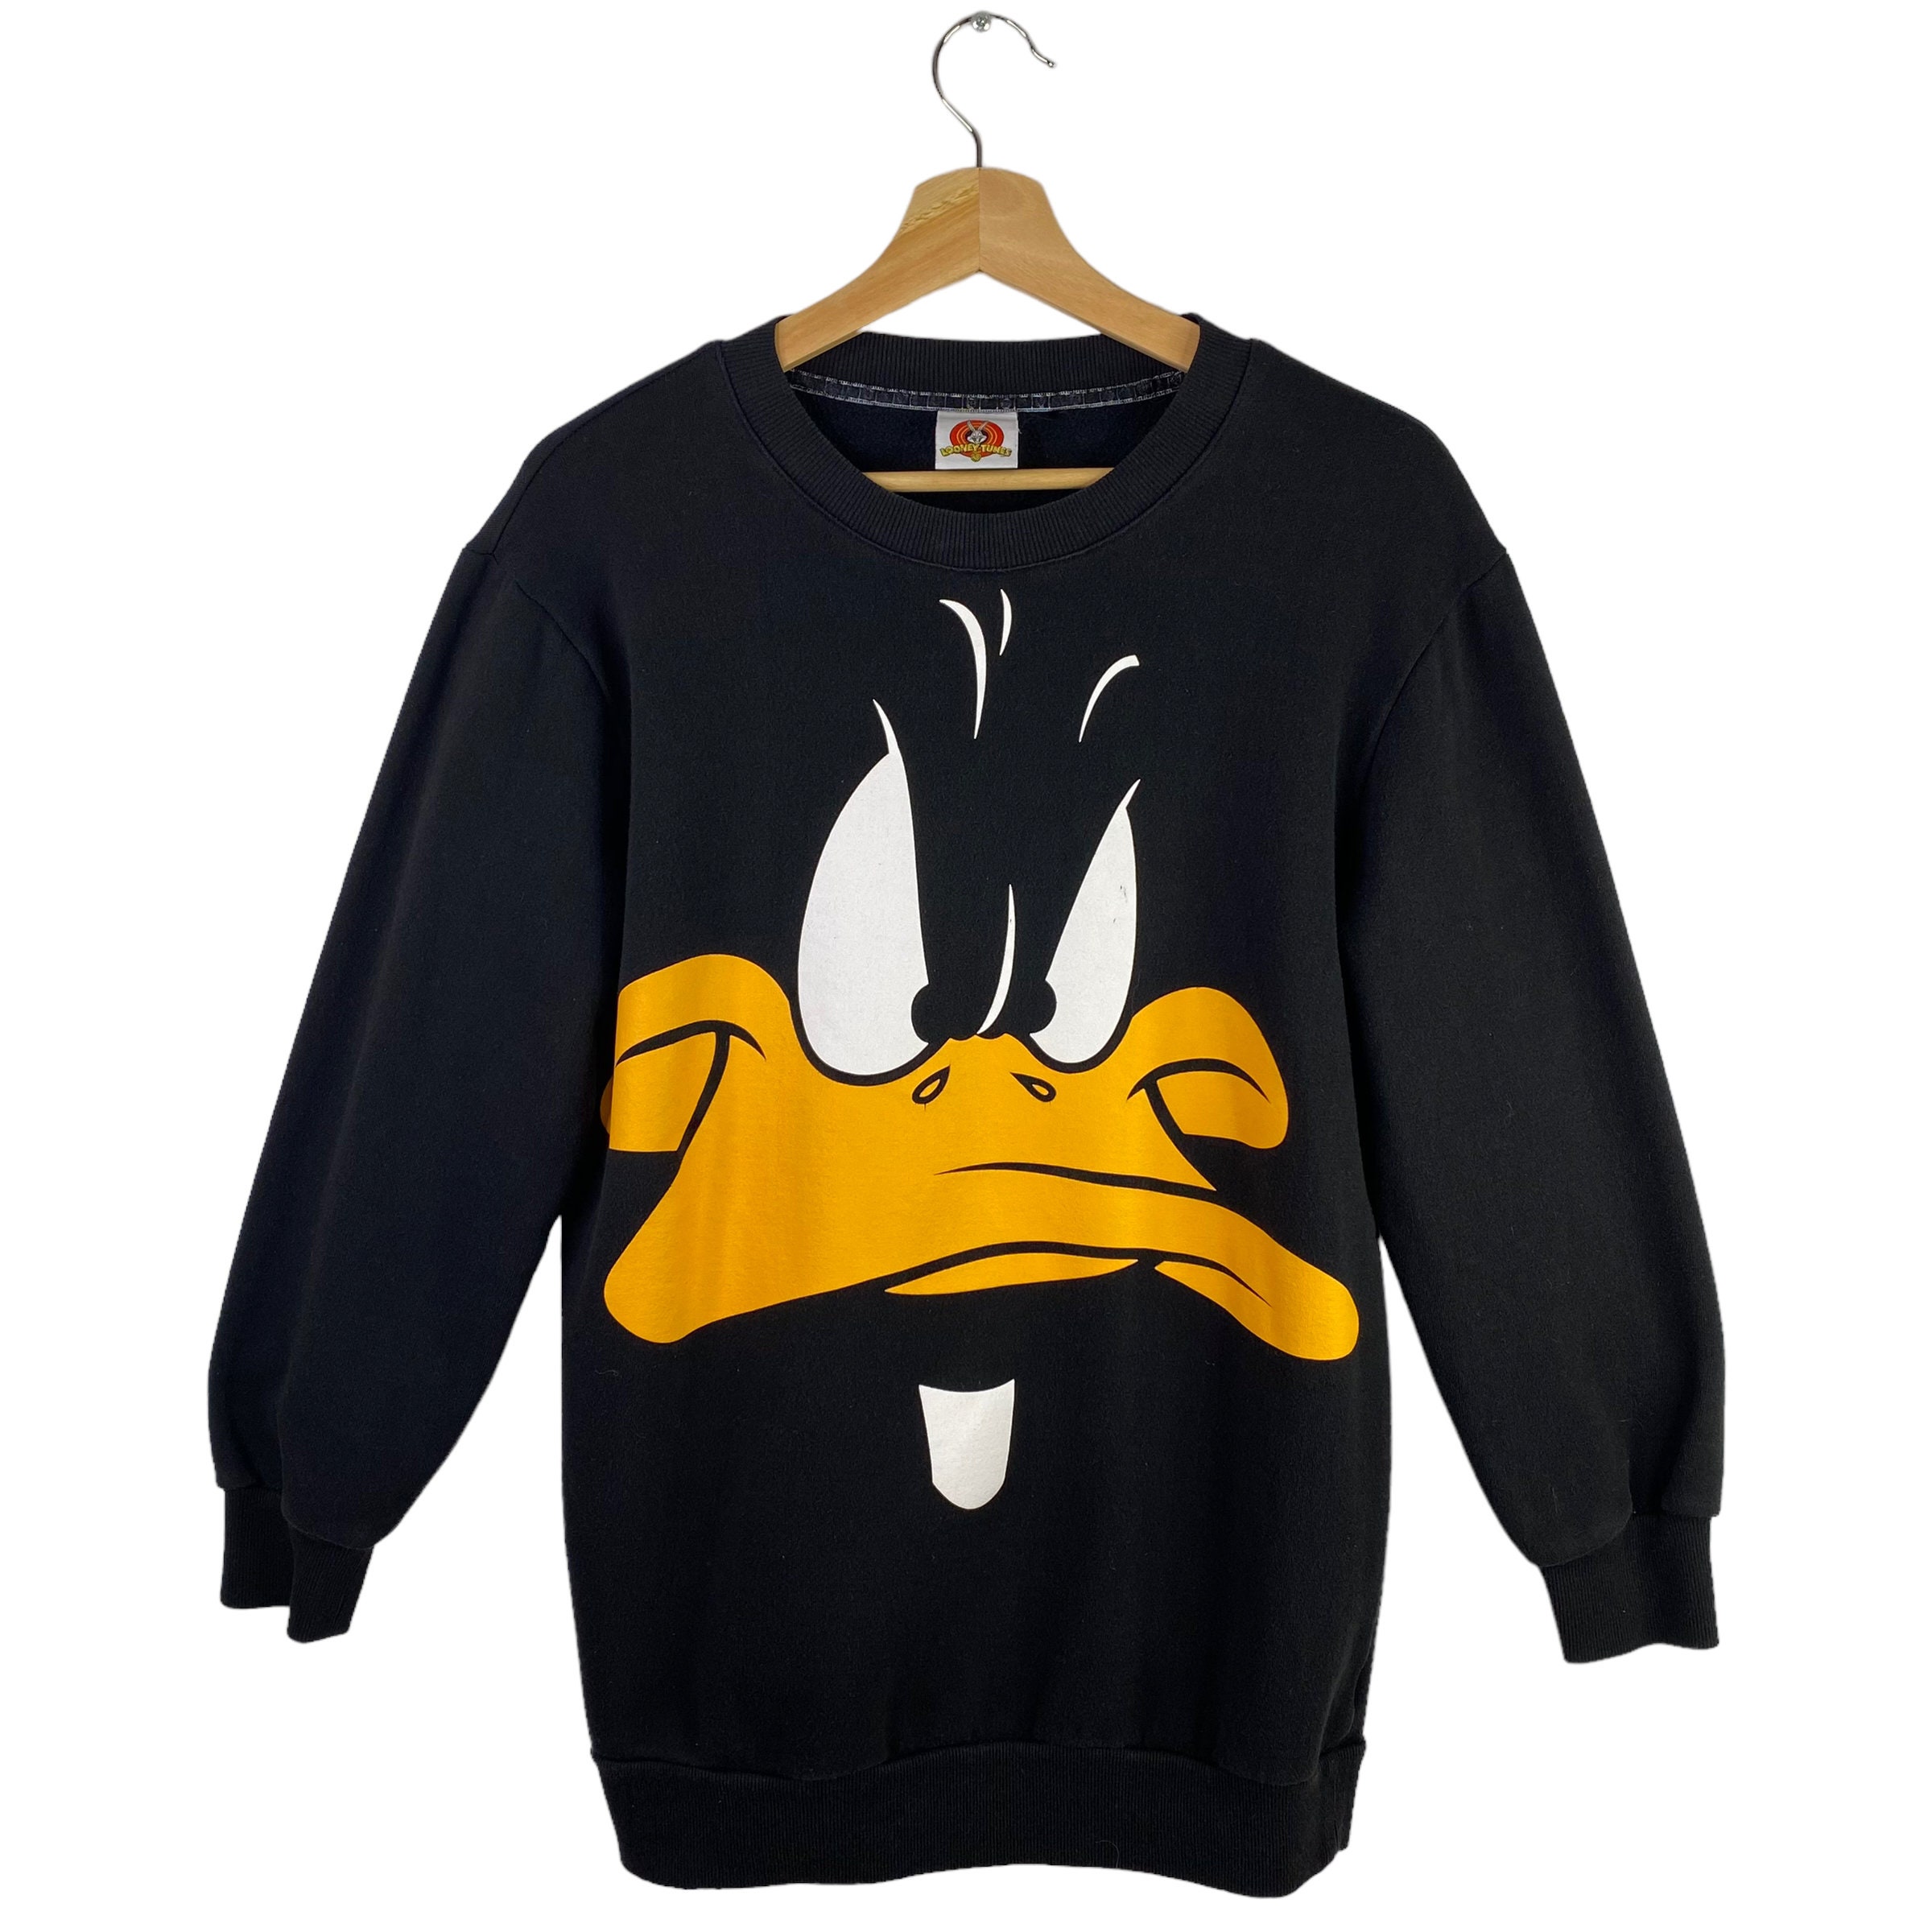 Daffy Duck Sweatshirt - Etsy